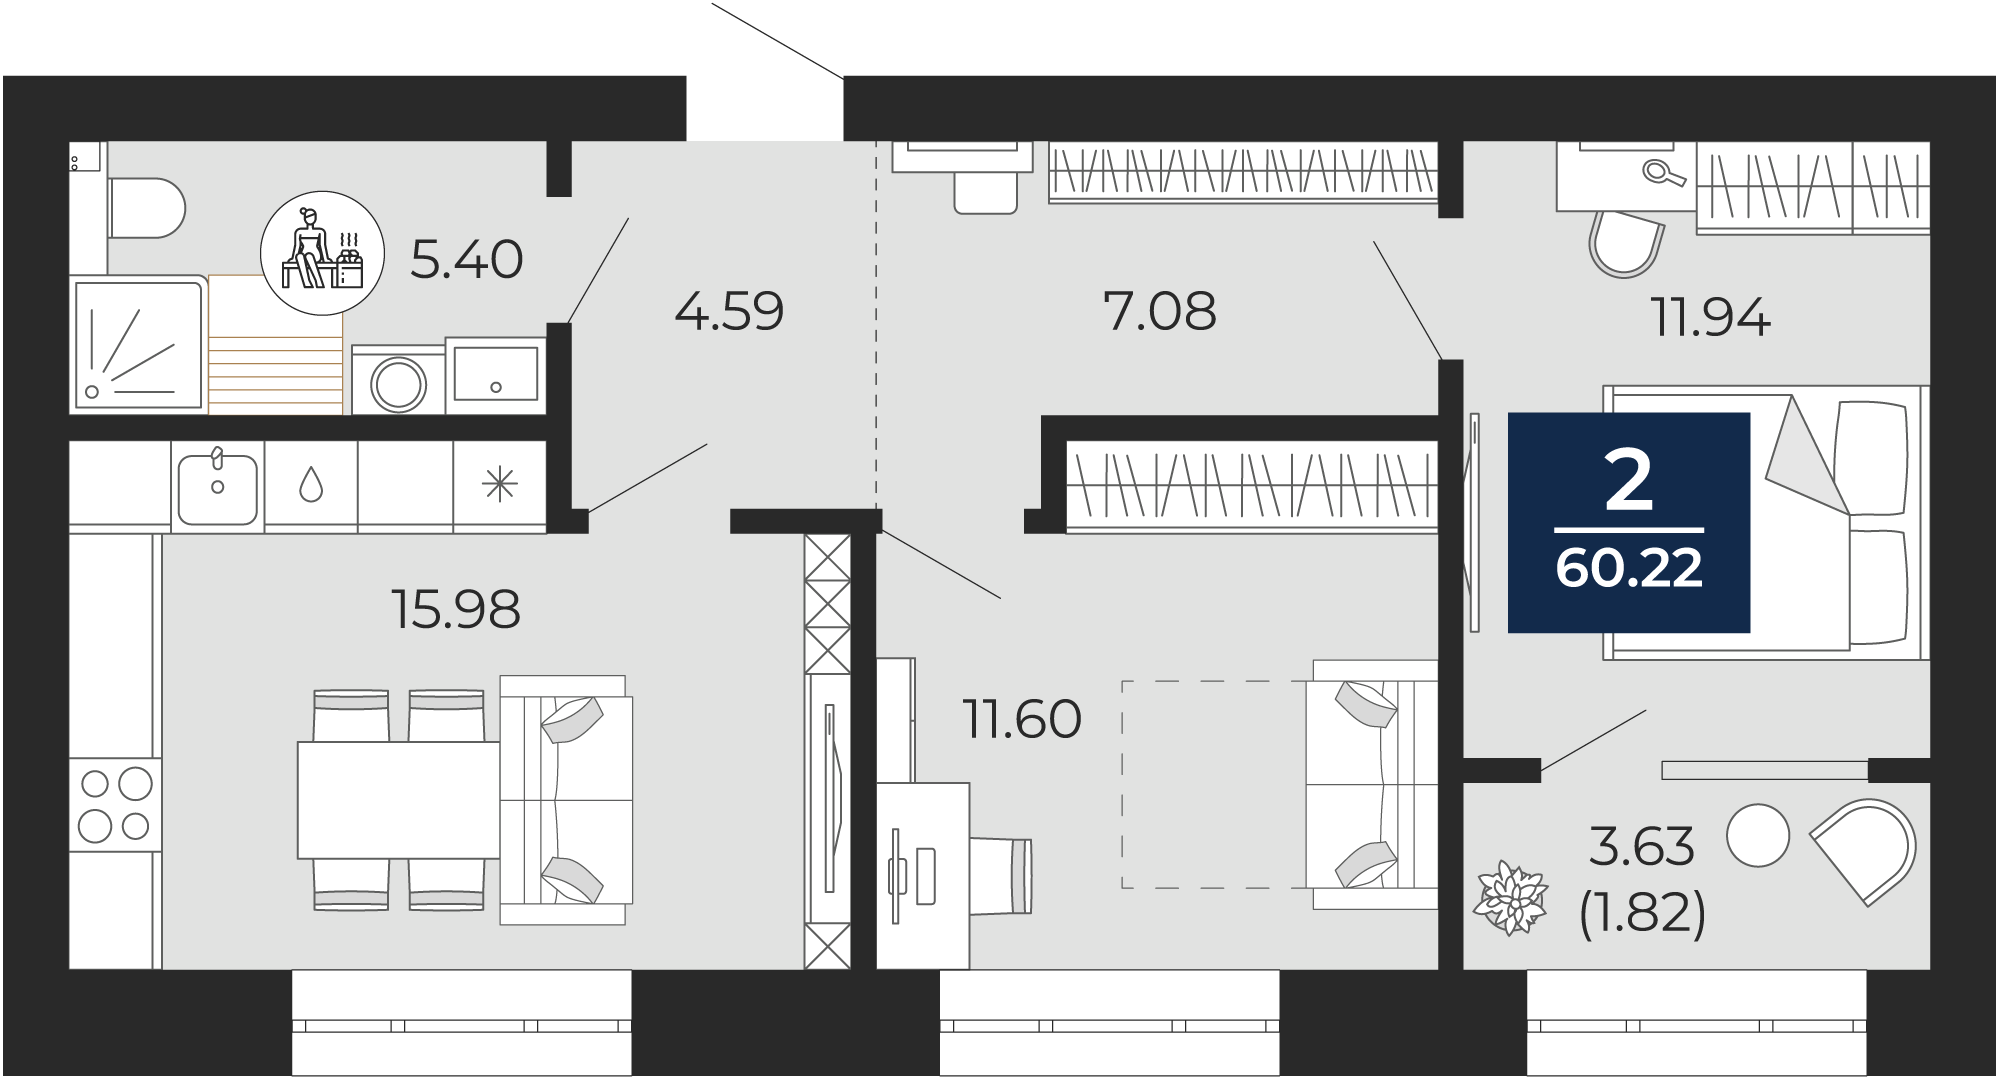 Квартира № 221, 2-комнатная, 60.22 кв. м, 5 этаж